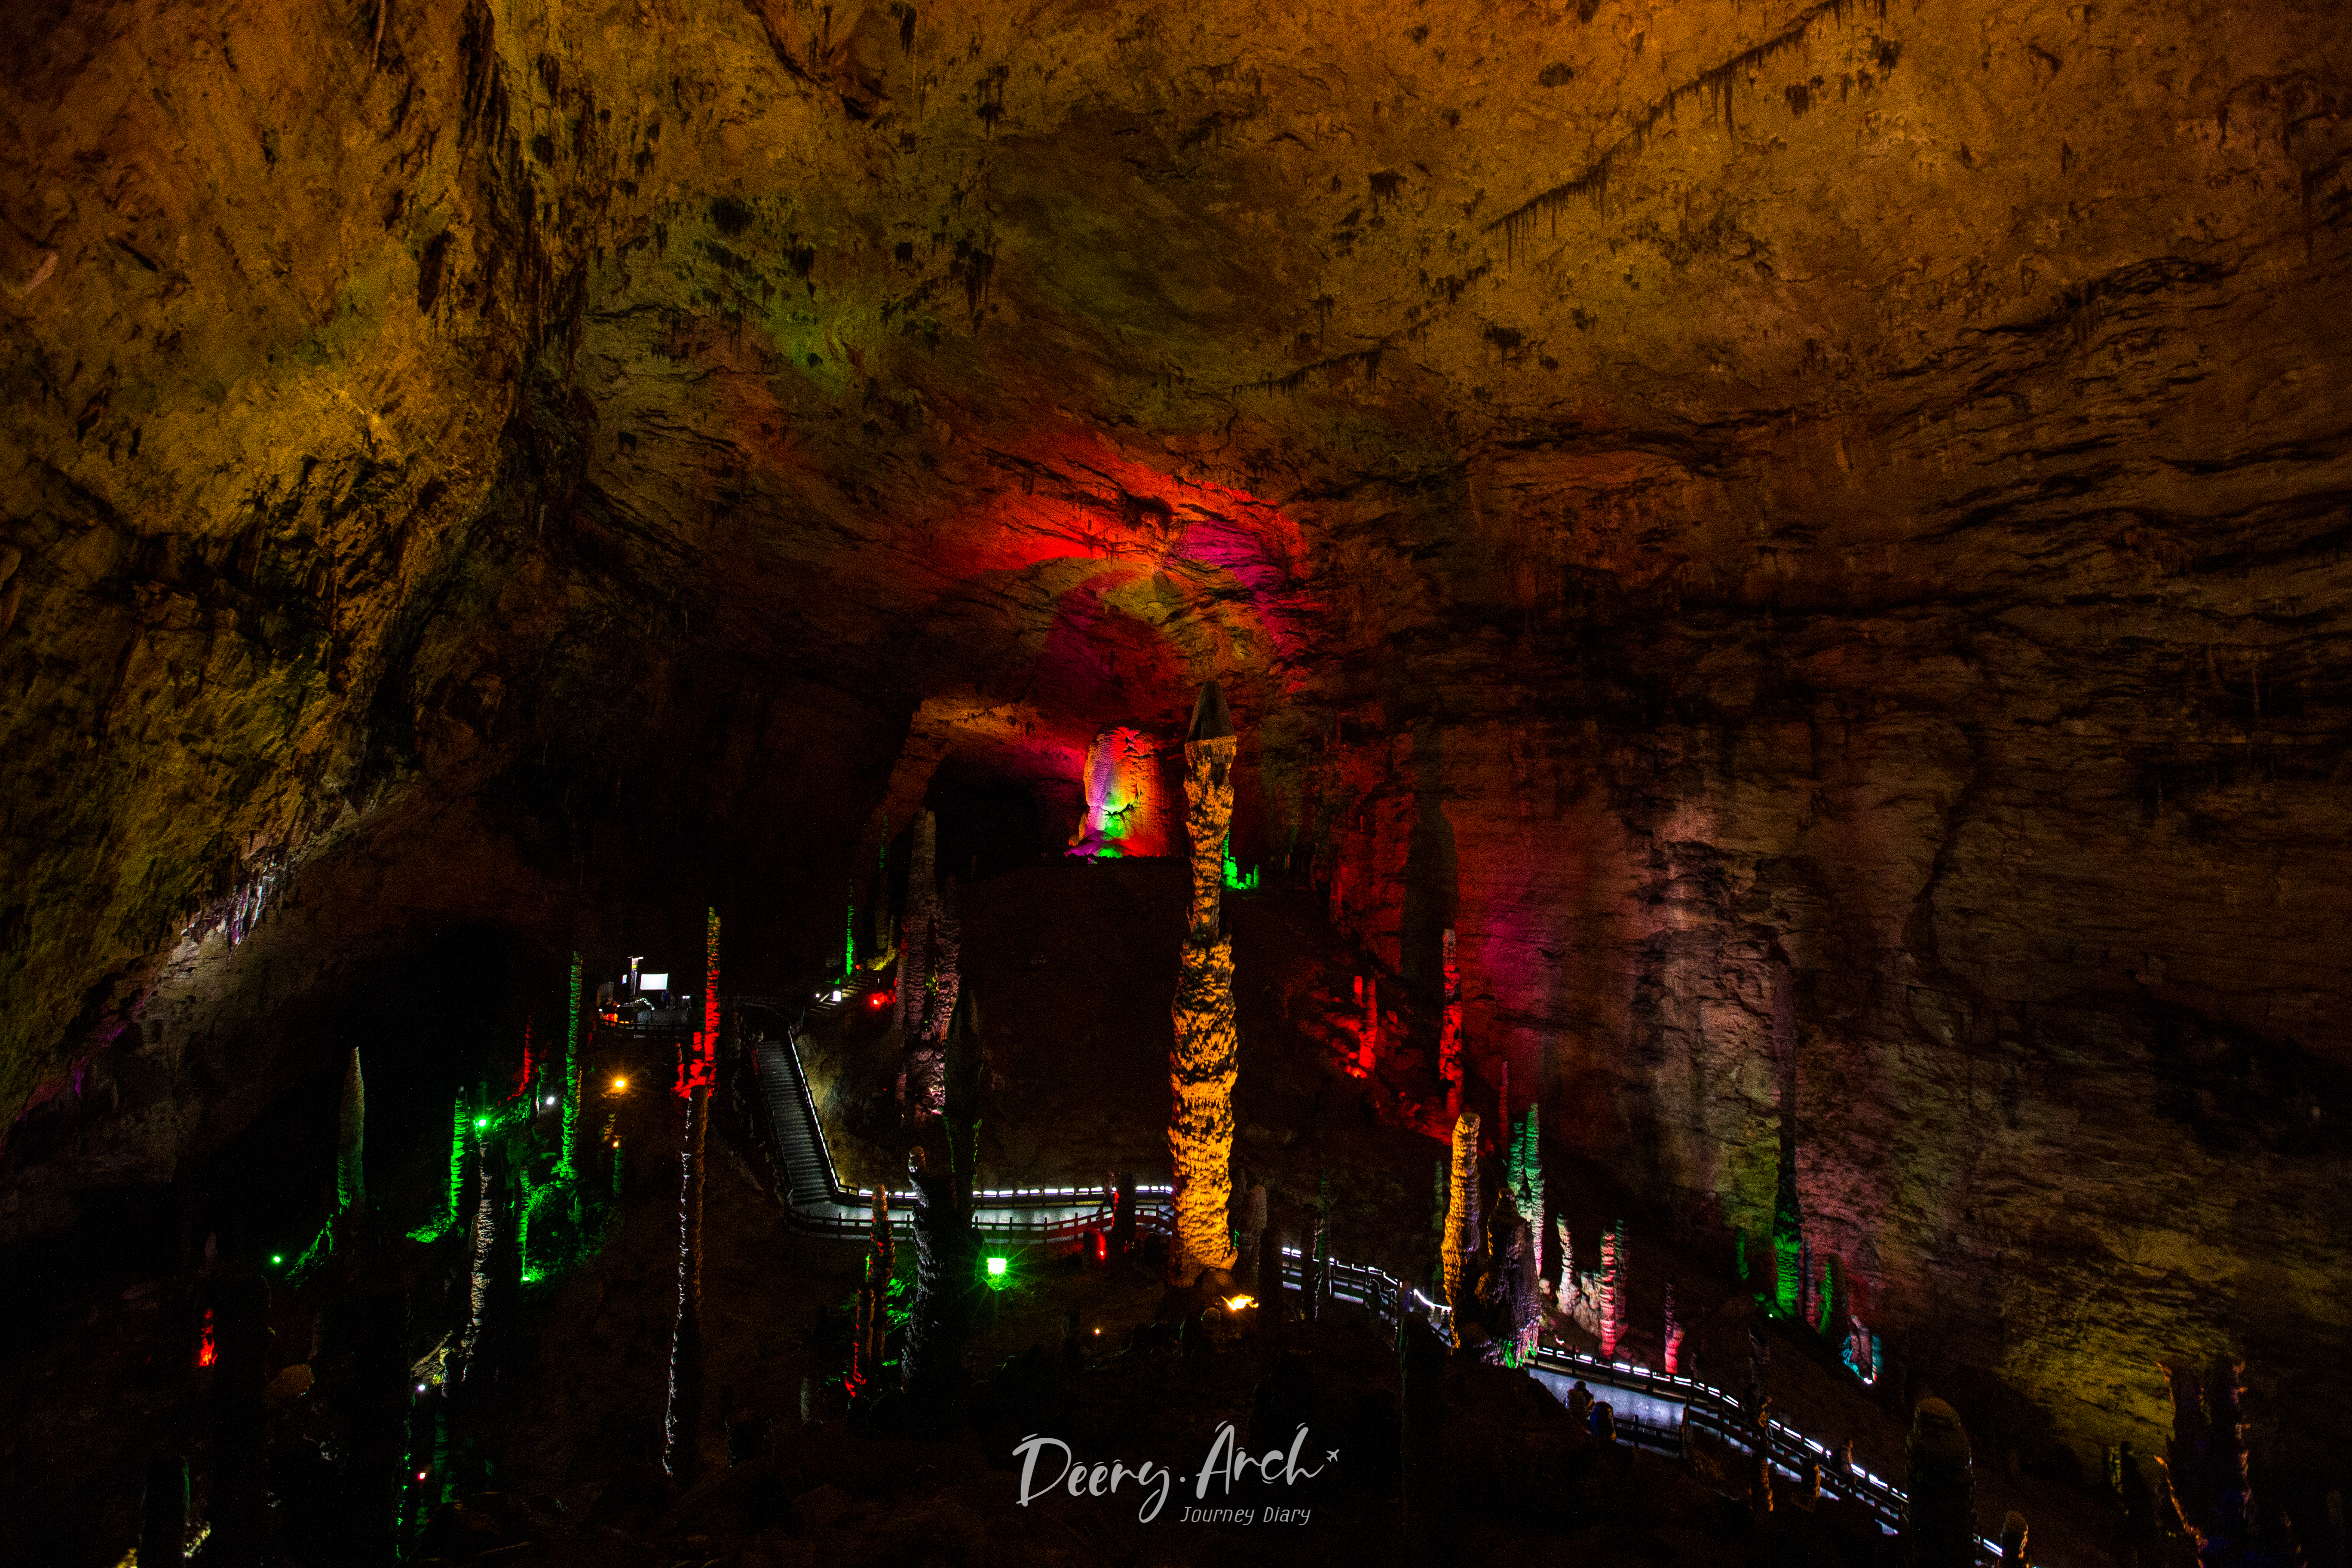 เที่ยวจีนเส้นทางสายอวตาร (5) ล่องเรือชมความงามถ้ำวังมังกรเหลือง (Yellow Dragon Cave)